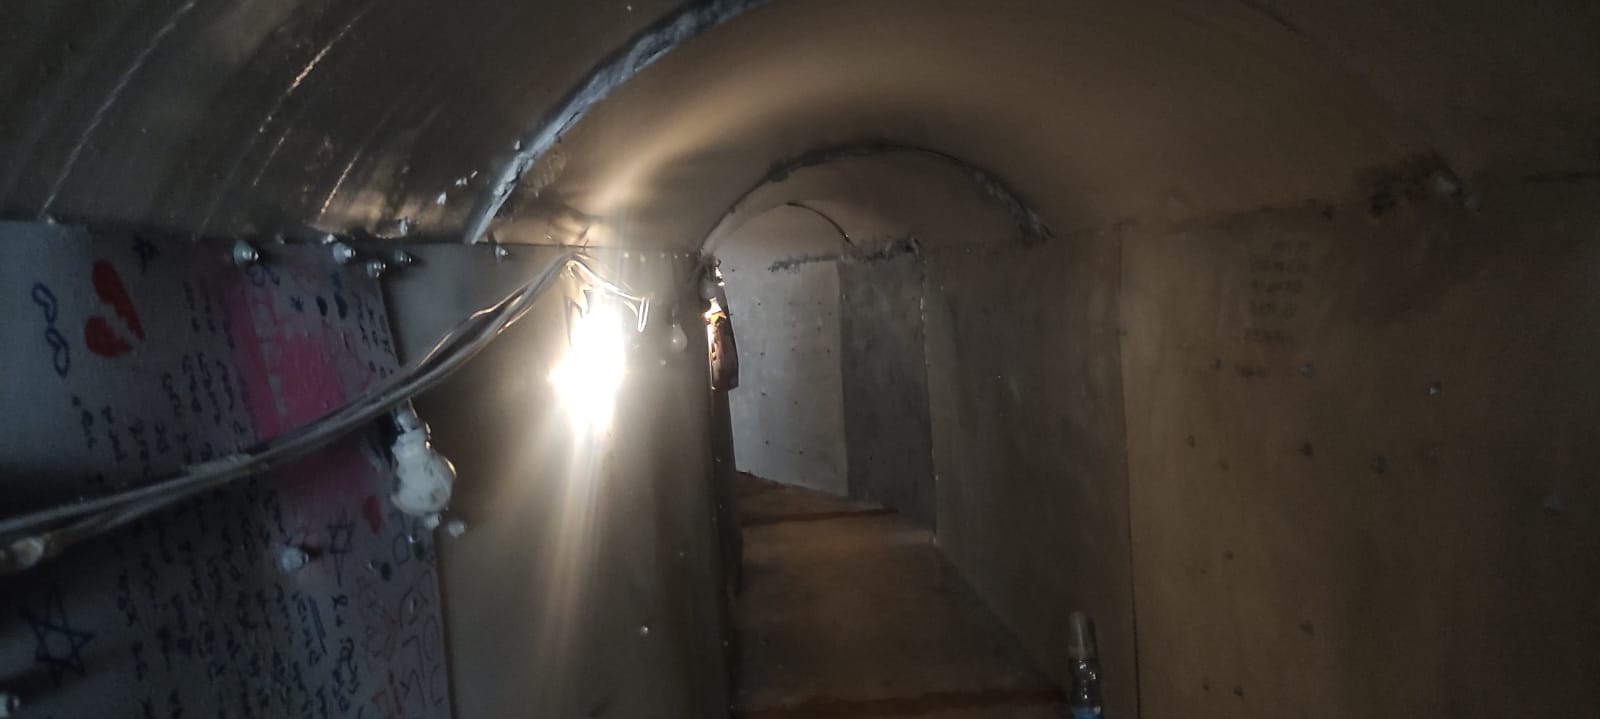 מיצג של האמן רוני לבבי בכיכר החטופים שמדמה את המנהרות בעזה (צילום: ניצן צבי כהן)